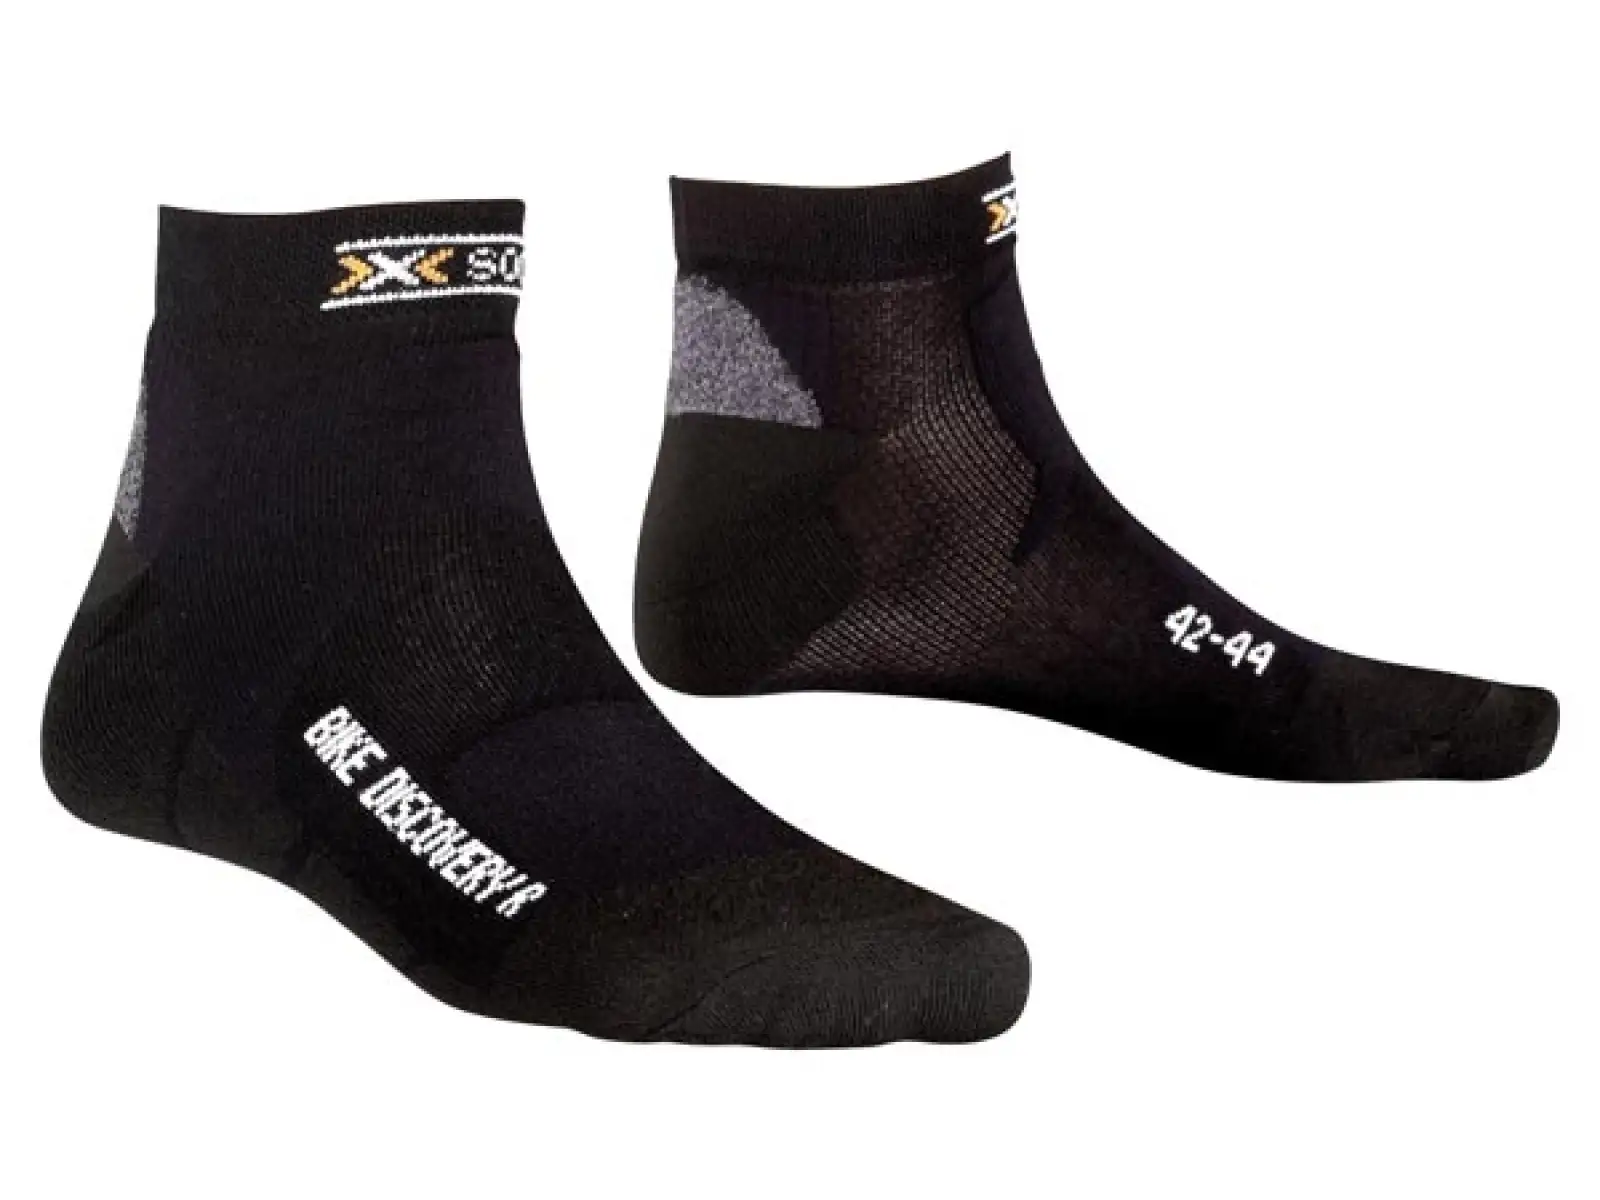 Ponožky X-Socks Bike Discovery biele